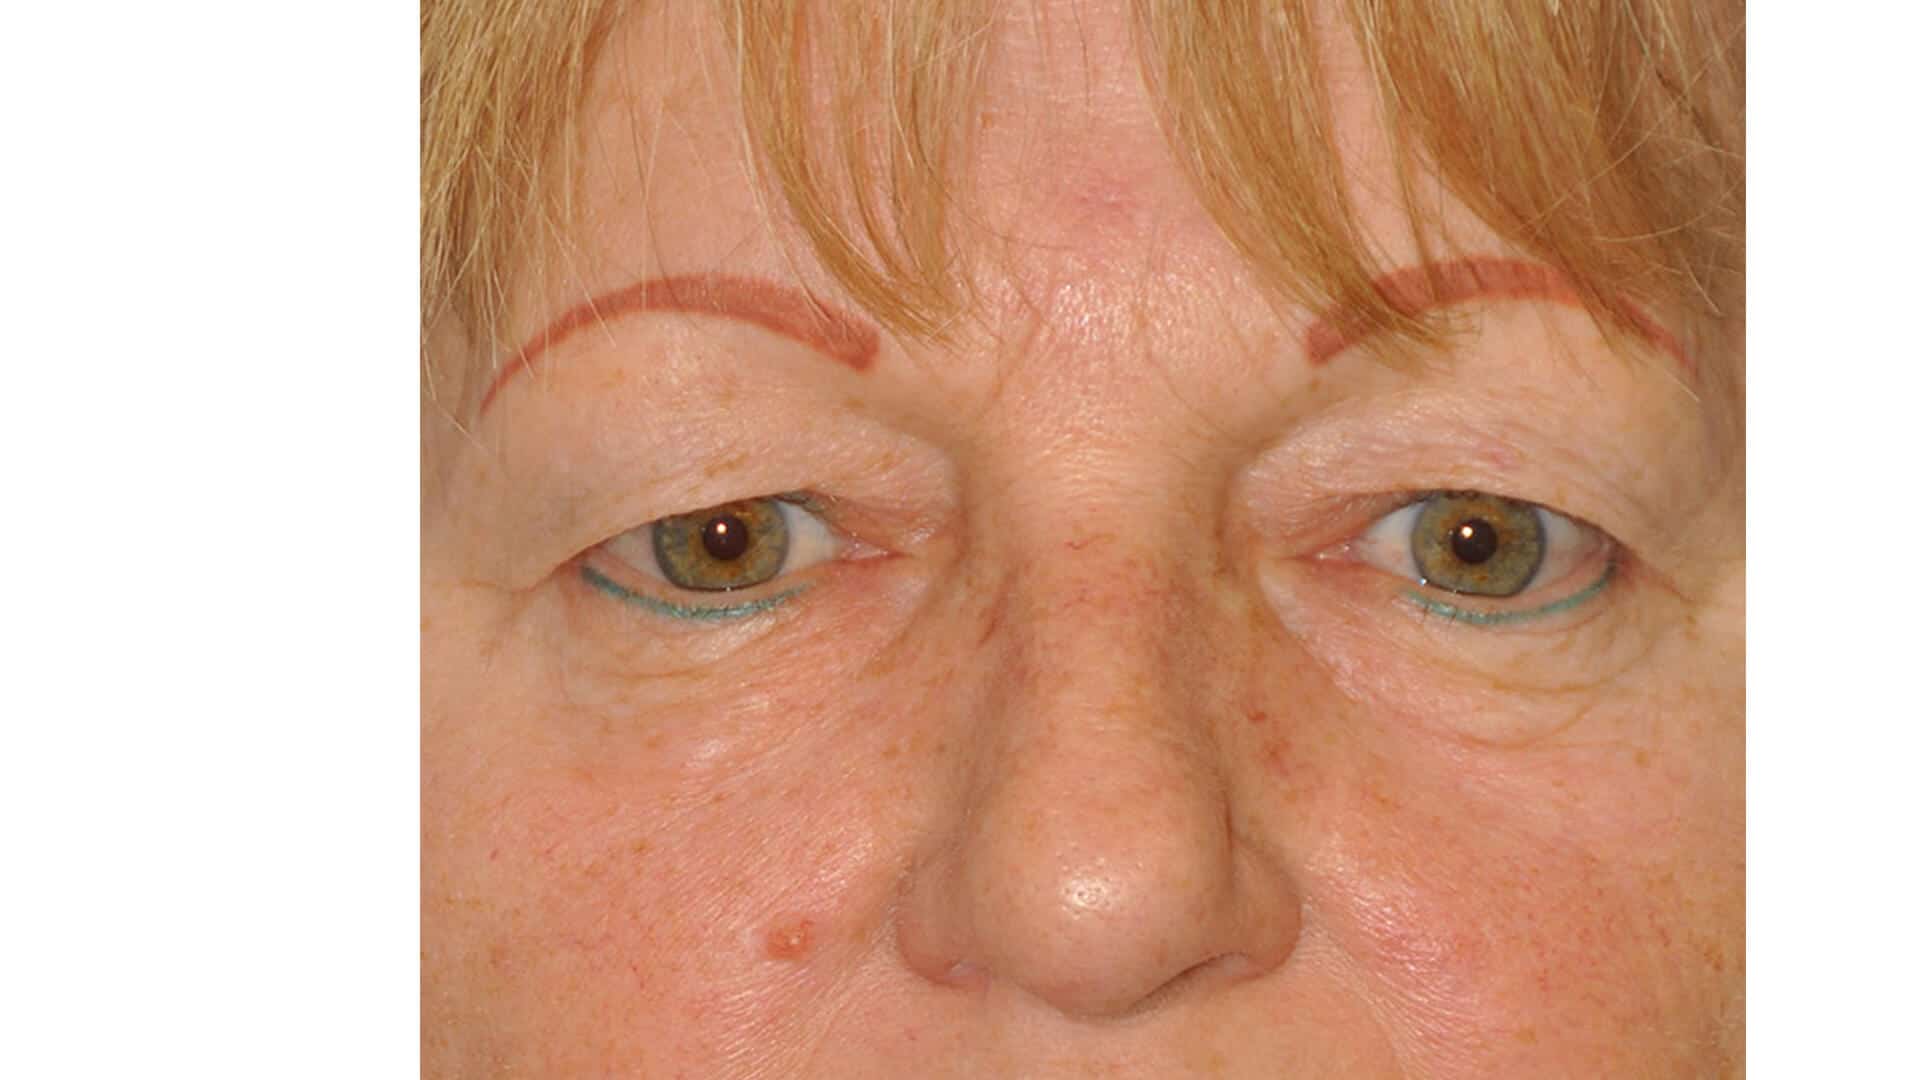 Upper Blepharoplasty Before & After Photos,Upper Eyelid Lift Surgery before & after,Upper Blepharoplasty Before and After Gallery,Upper Eyelid Blepharoplasty Photos,Upper Blepharoplasty before & after, Blepharoplasty (Eyelid Lift) &#8211; Upper